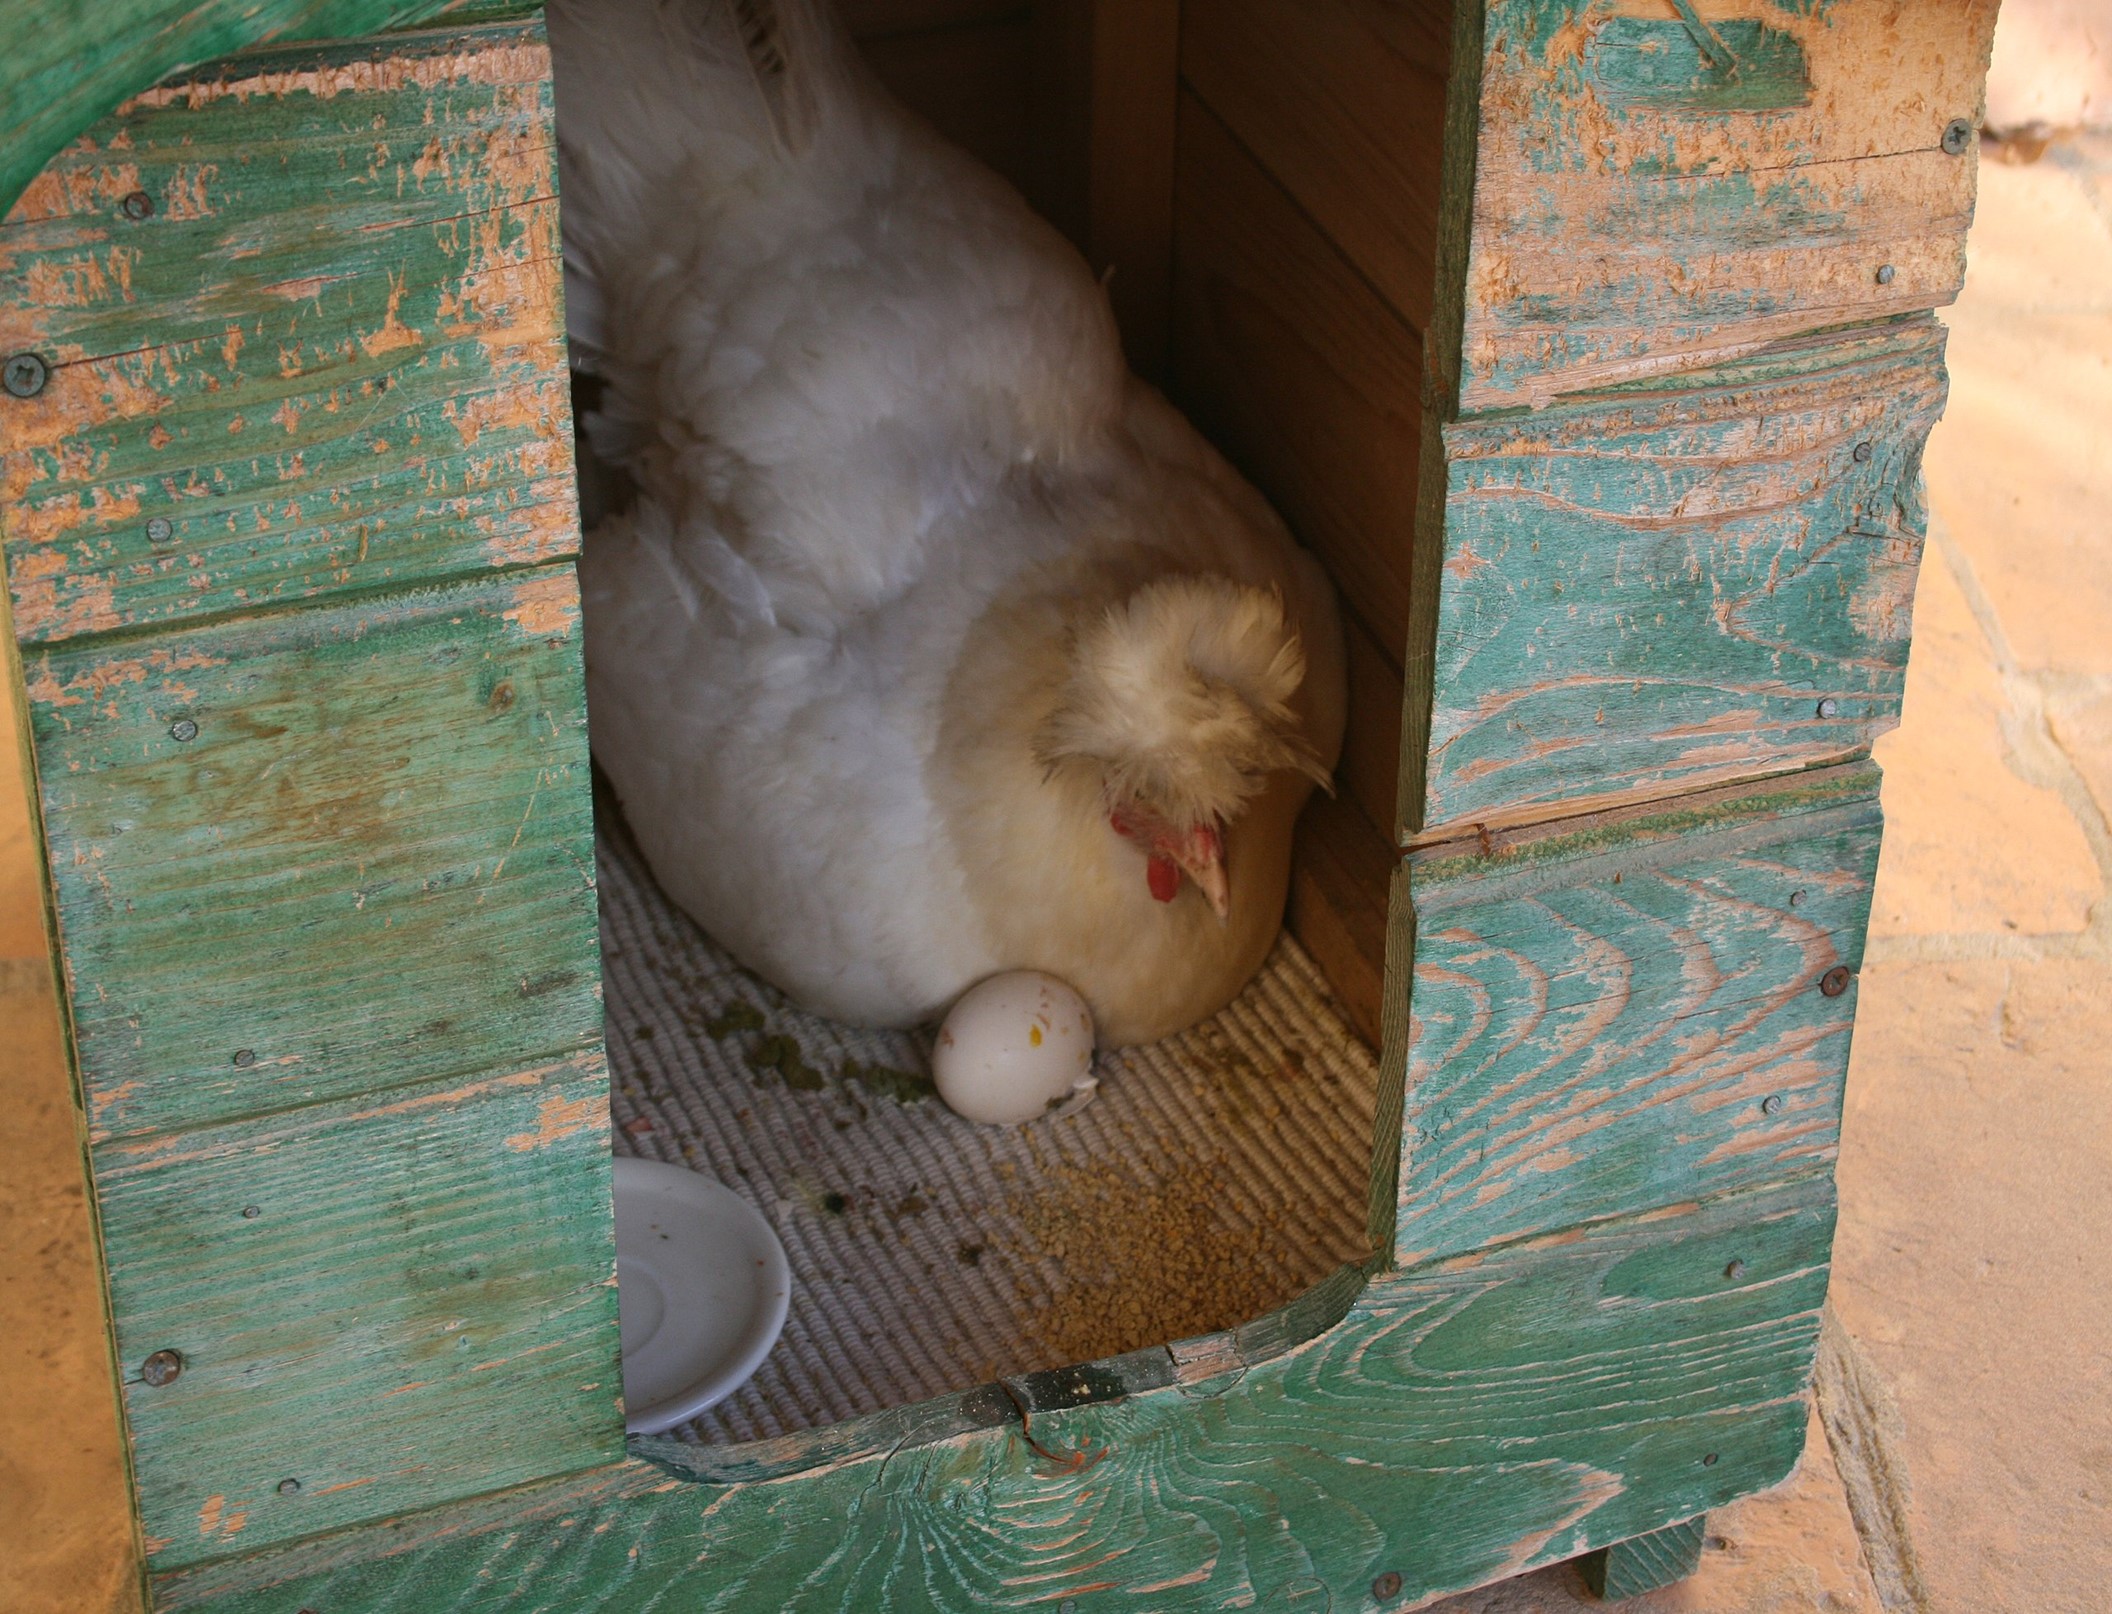 Chicken mama watching her egg hatch